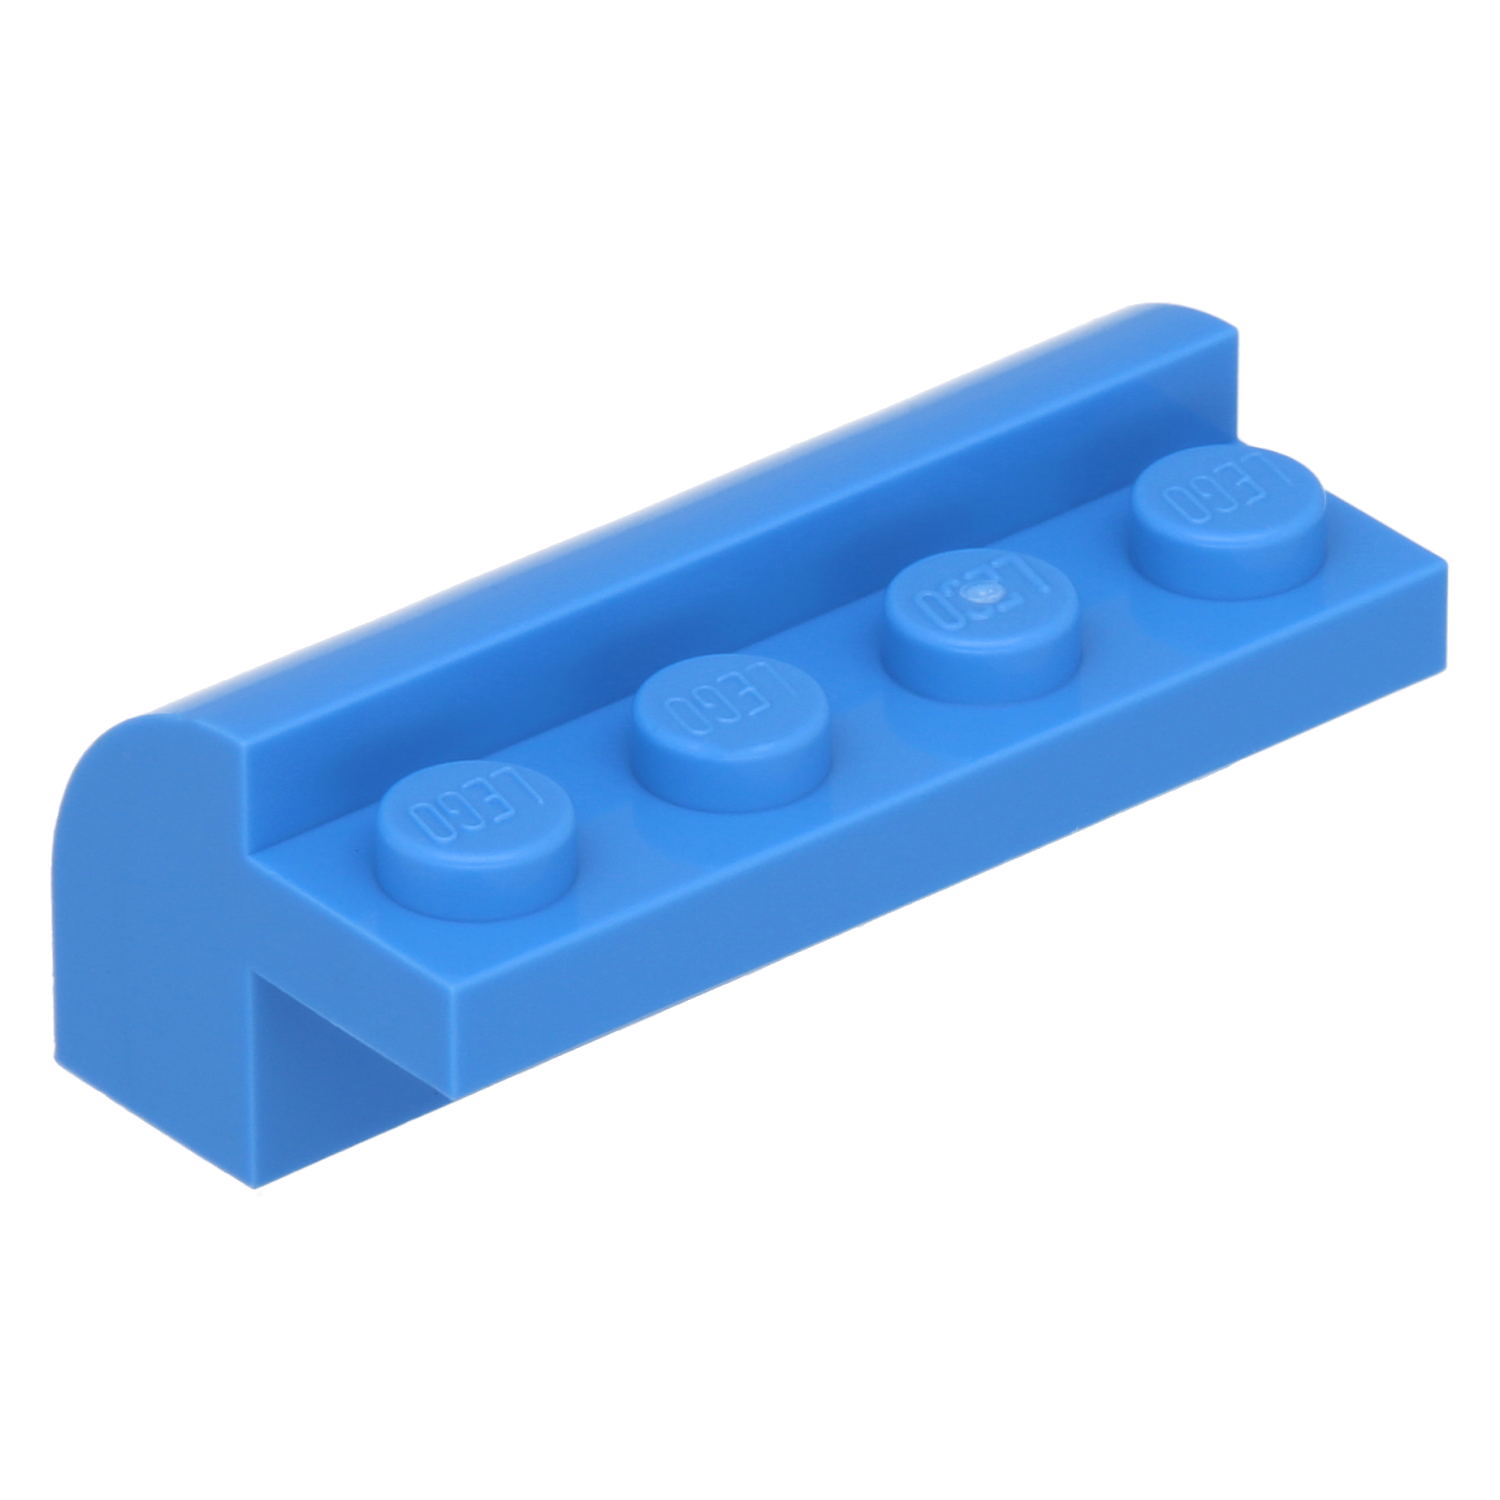 LEGO Steine (modifiziert) - 2 x 4 x 1 1/3 mit 4 vertieften Noppen